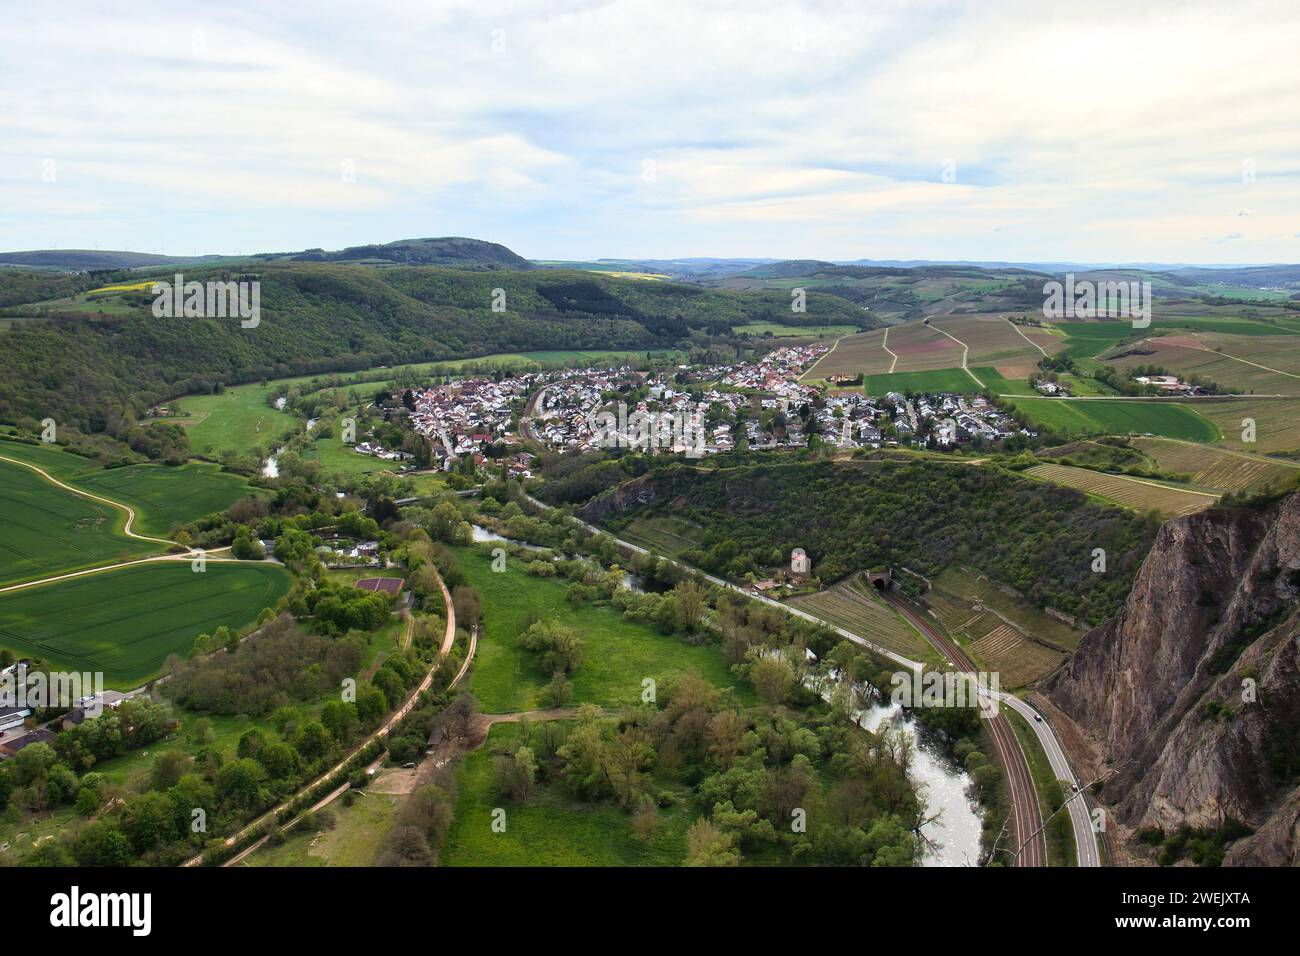 Bad Munster, Allemagne - 9 mai 2021 : ville allemande entourée d'herbe verte et de collines un jour de printemps en Rhénanie-Palatinat, Allemagne. Banque D'Images